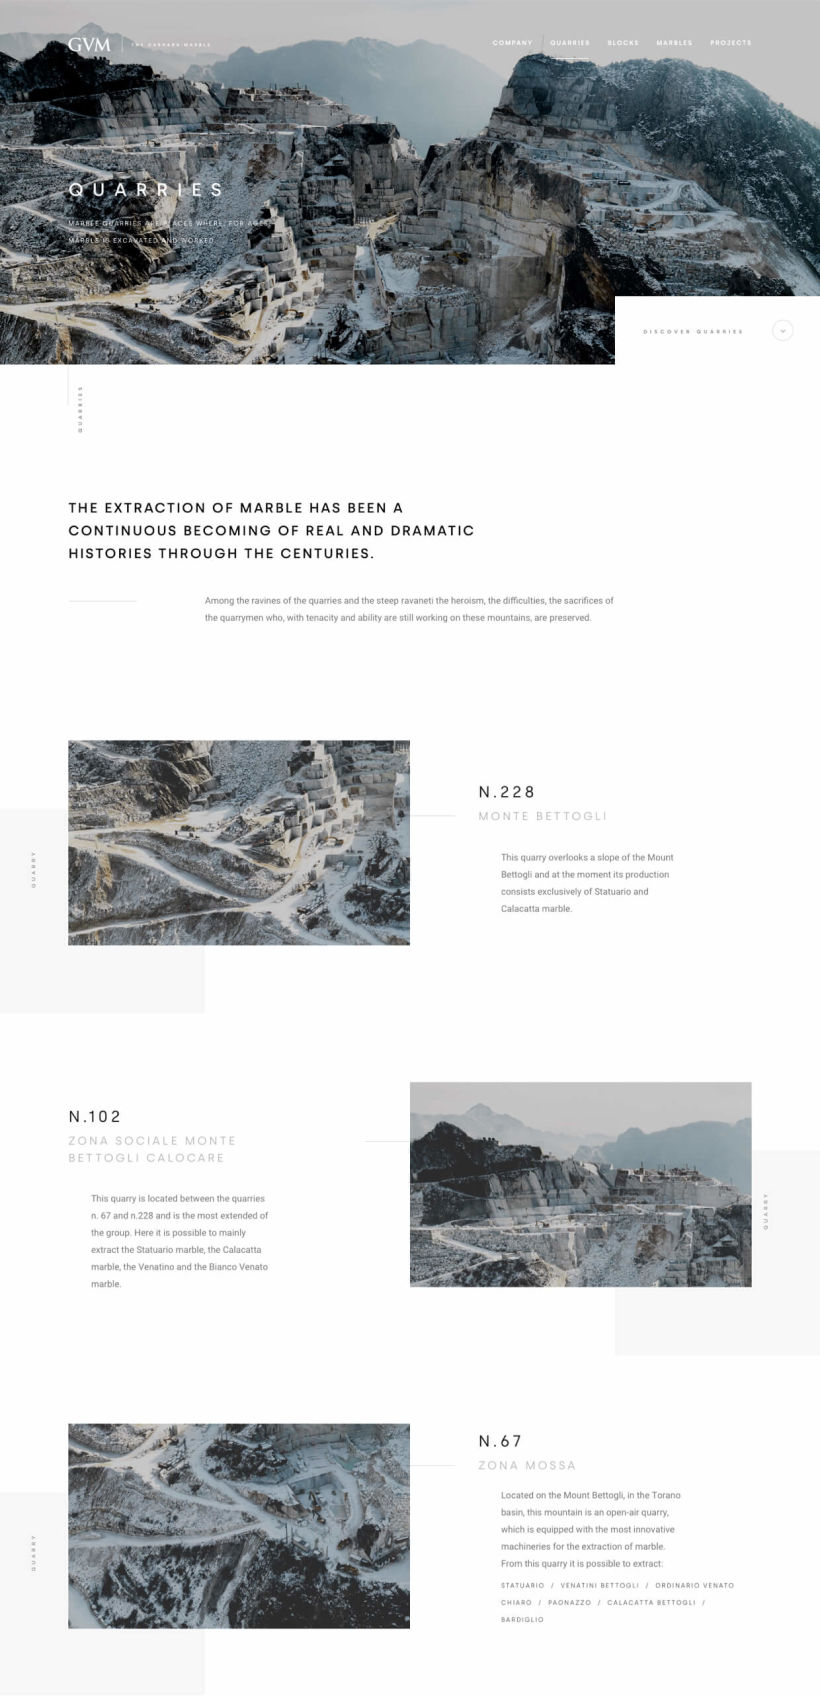 GVM - The Carrara Marble 2